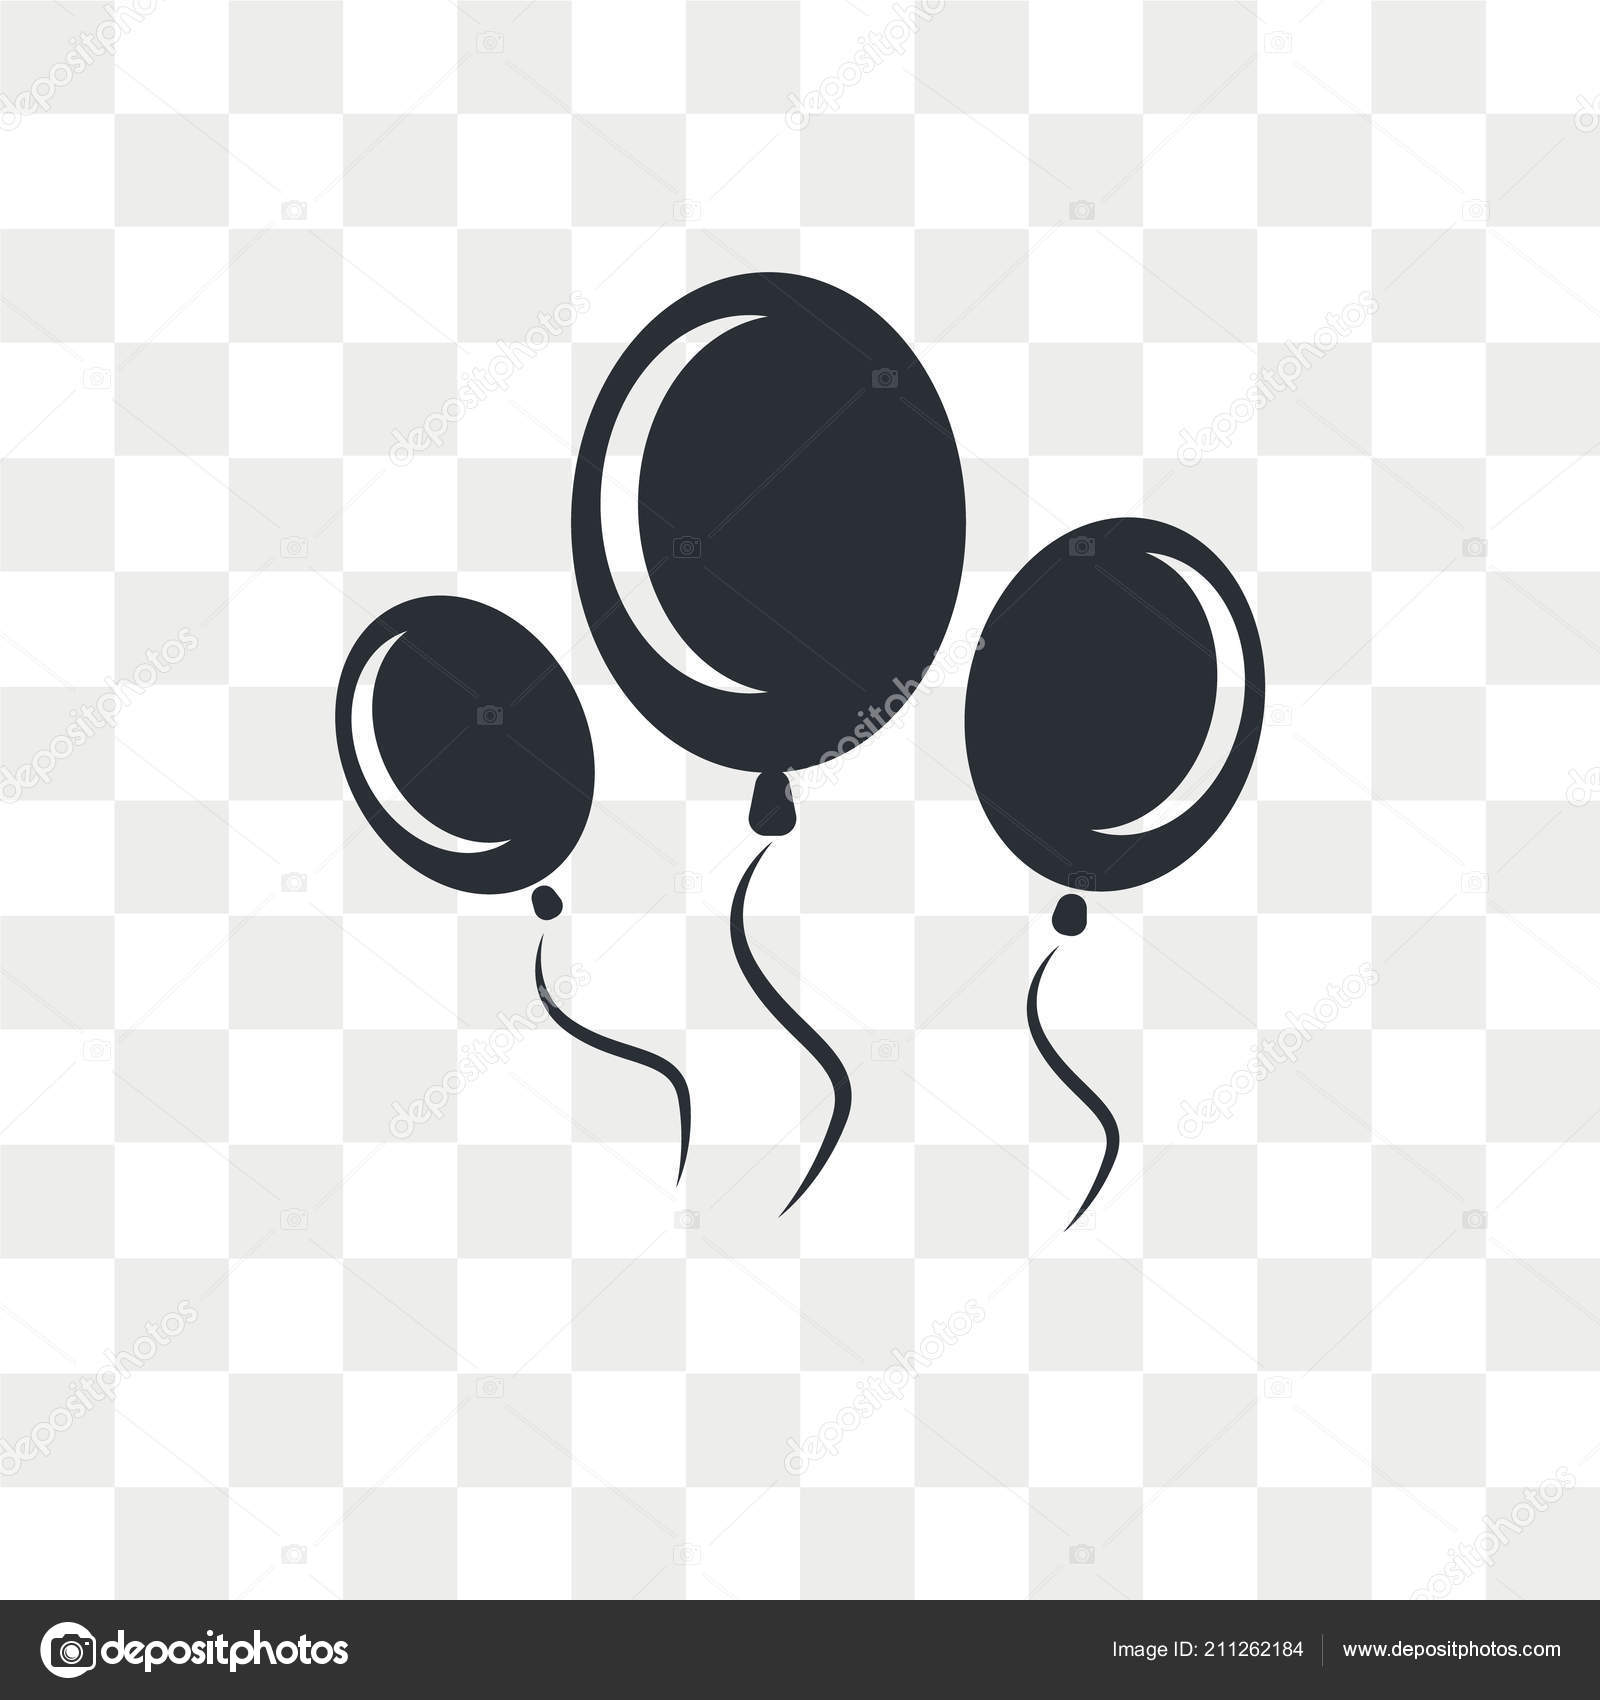 Balloon Logo Maker | Create a Balloon Logo | Fiverr